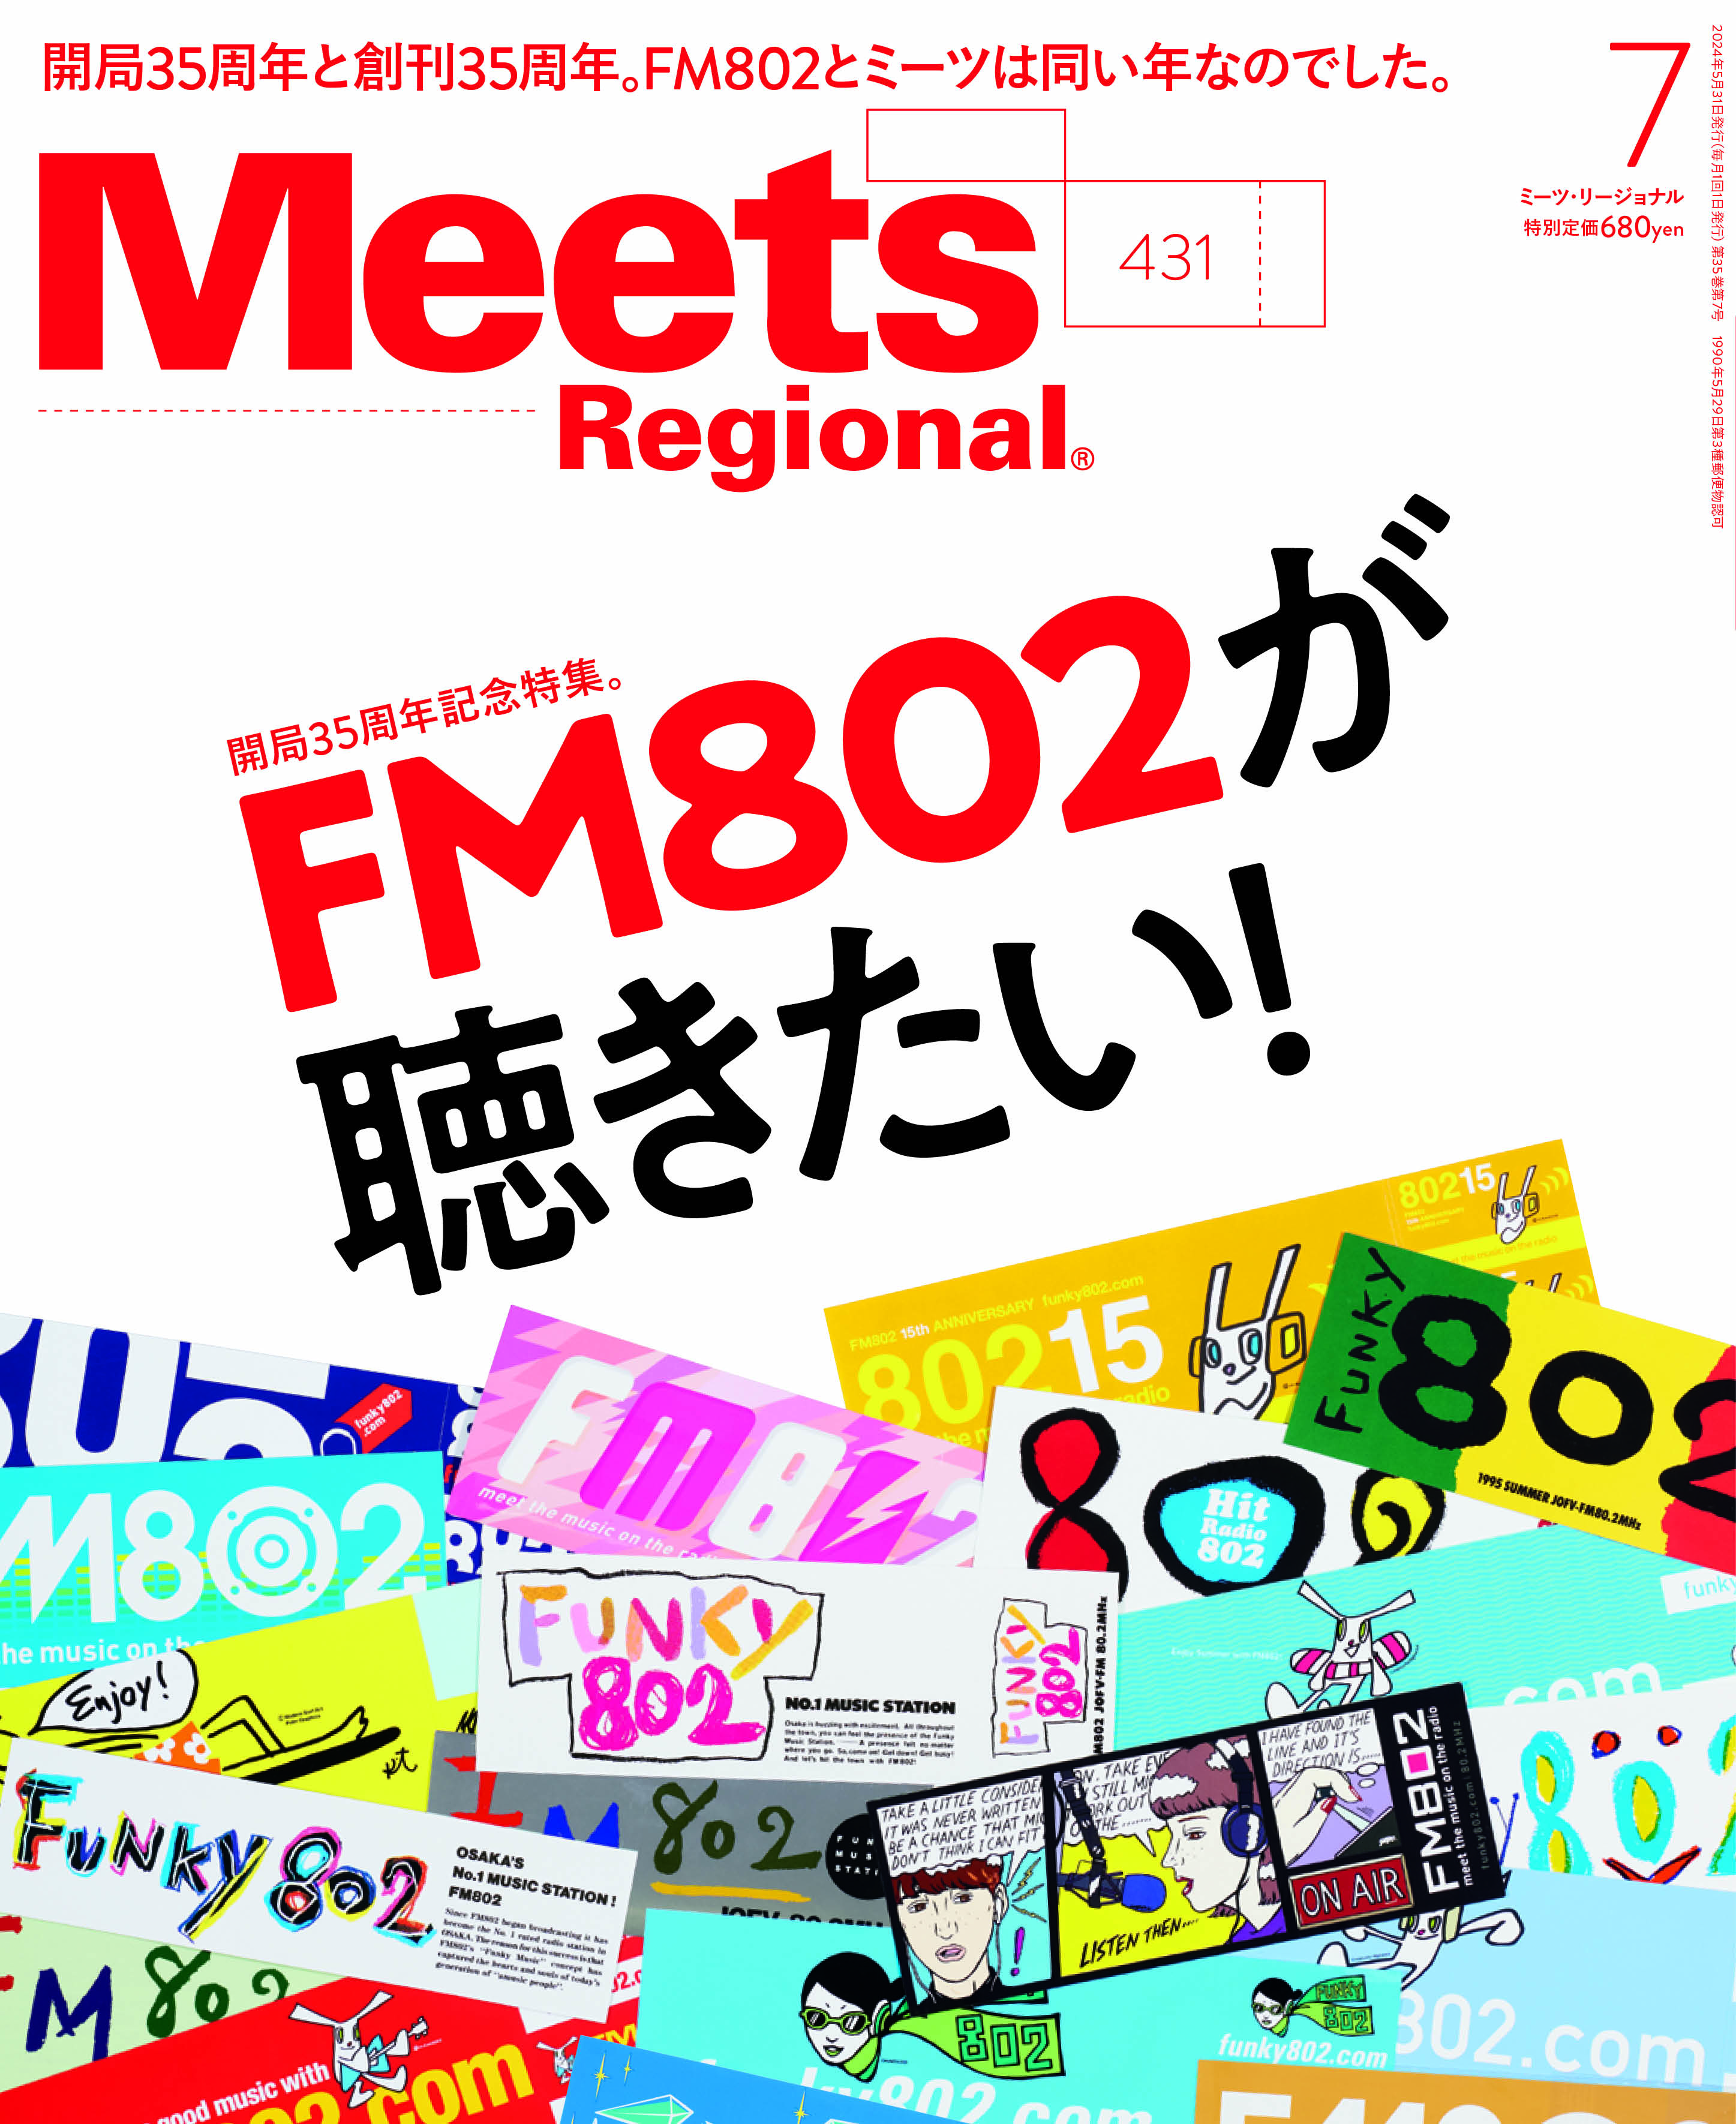 05.31(金)発売「Meets Regional」7月号 FM802特集にてSHISHAMOの 